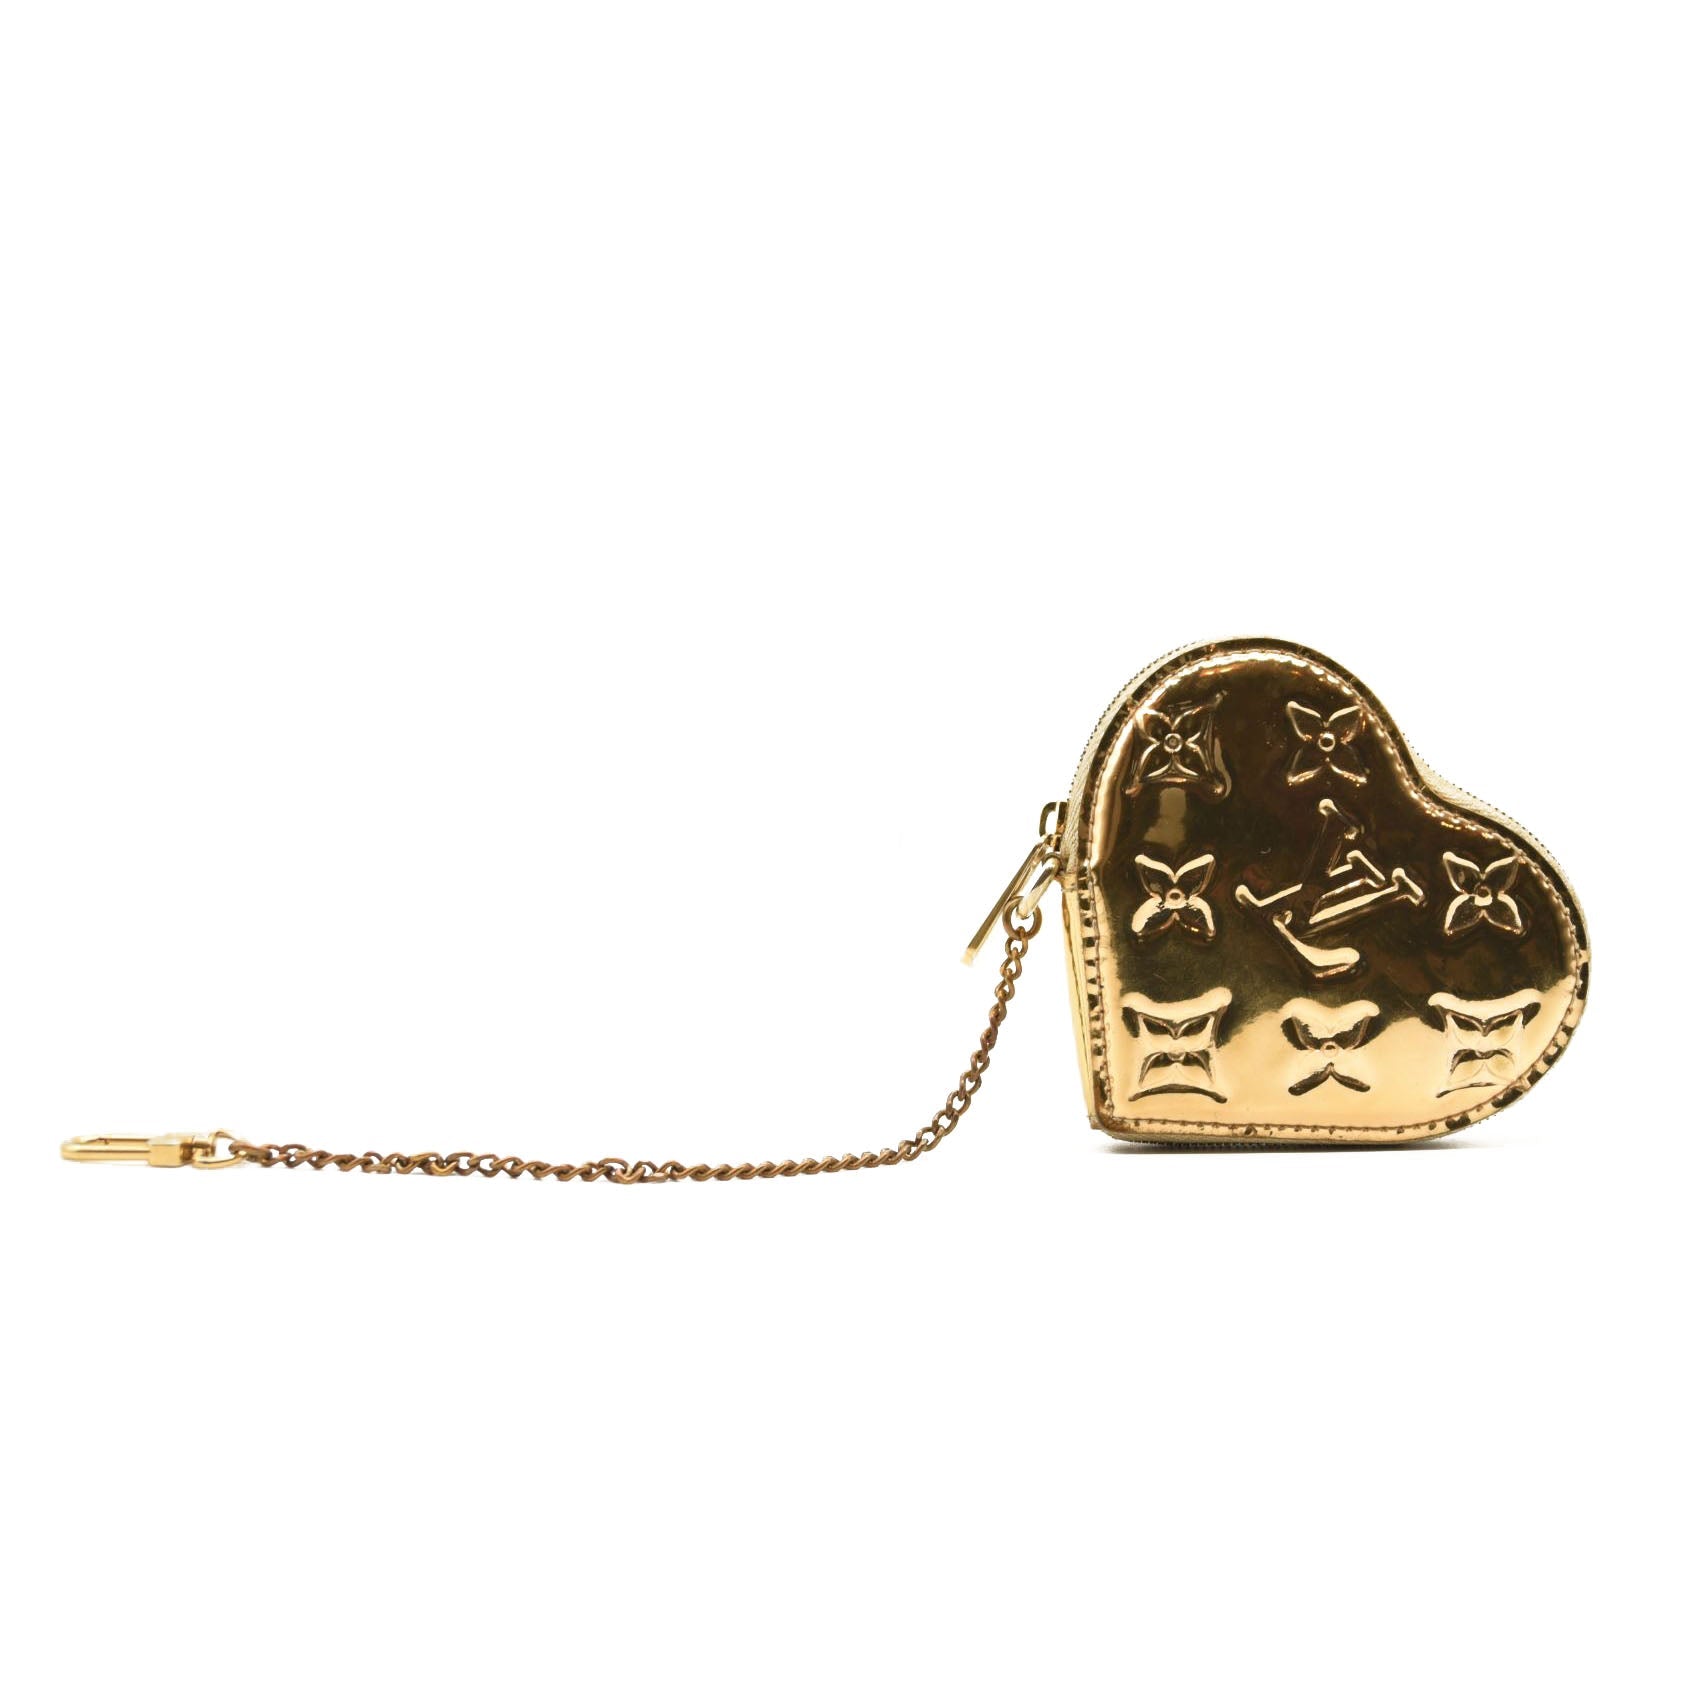 lv heart shaped coin purse